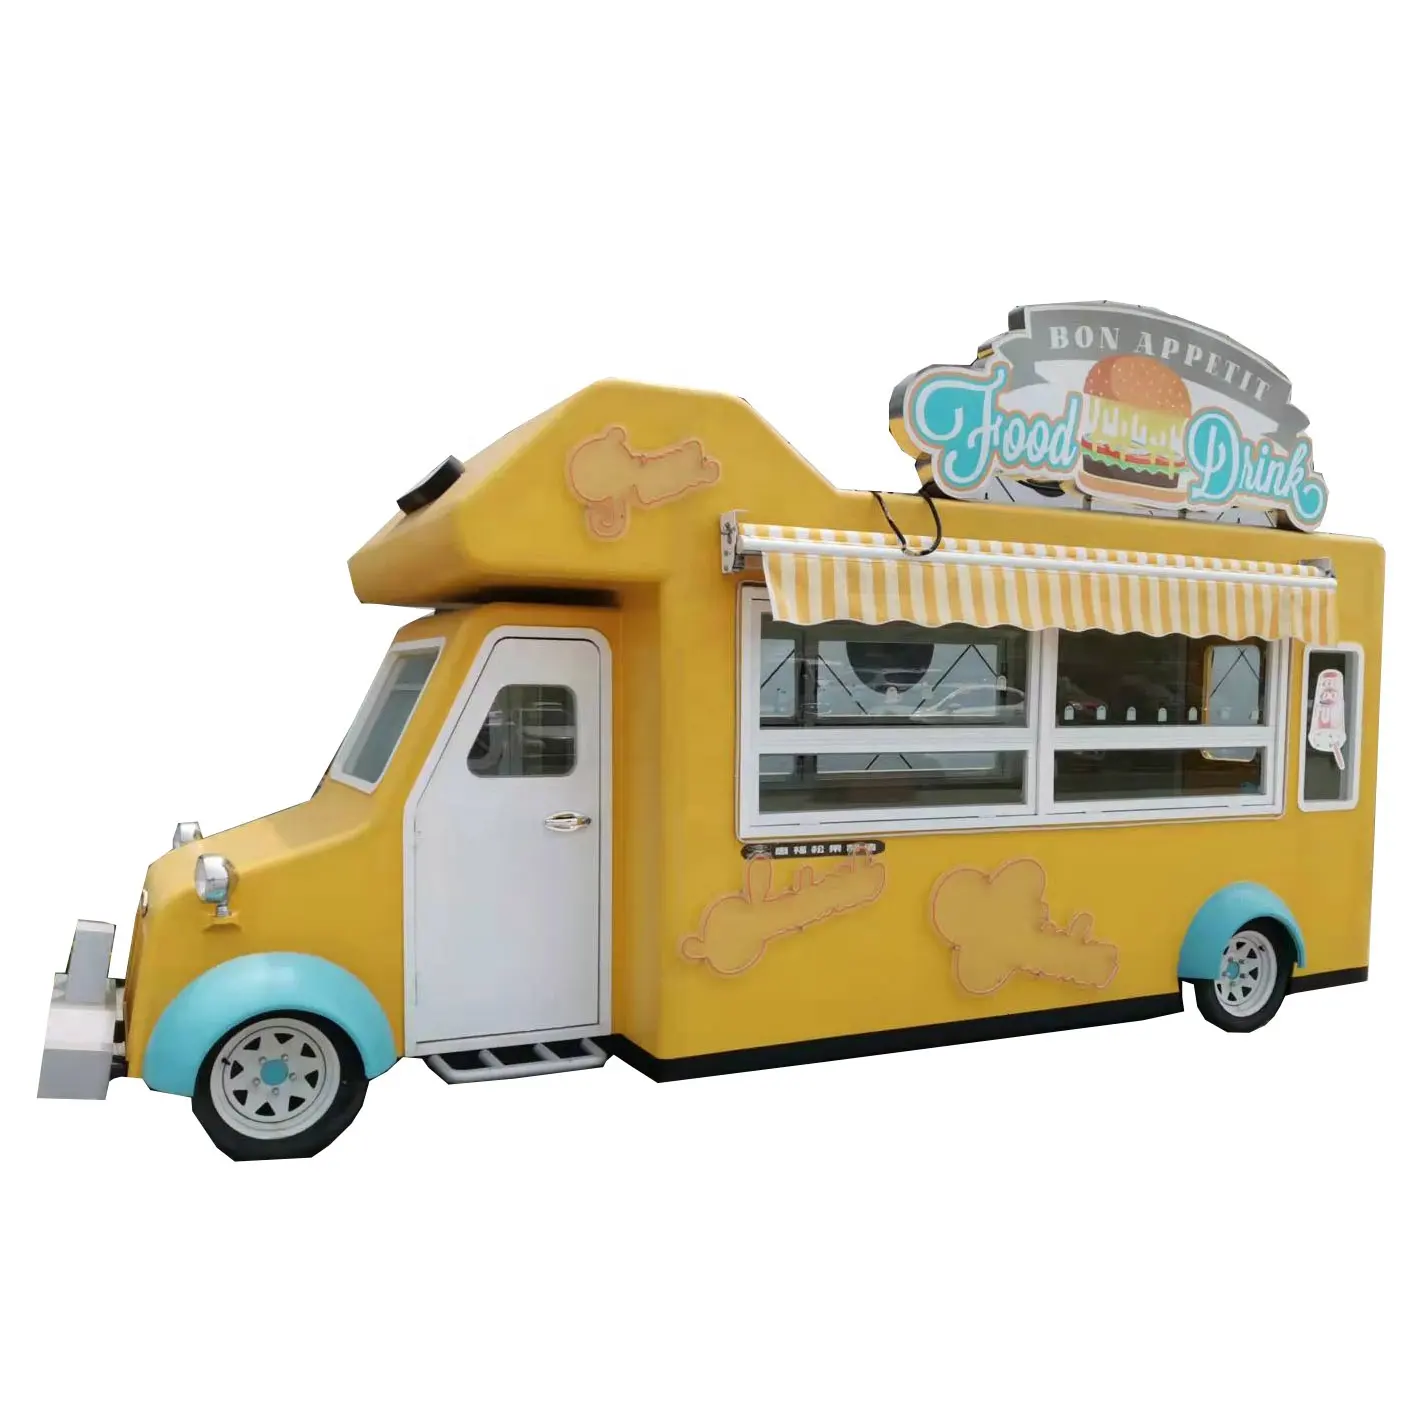 Neueste Mode mobile Küche Restaurant Auto Konzession gebrauchter Imbisswagen voll ausgestattet Kaffee-Kiosk Kastenwagen